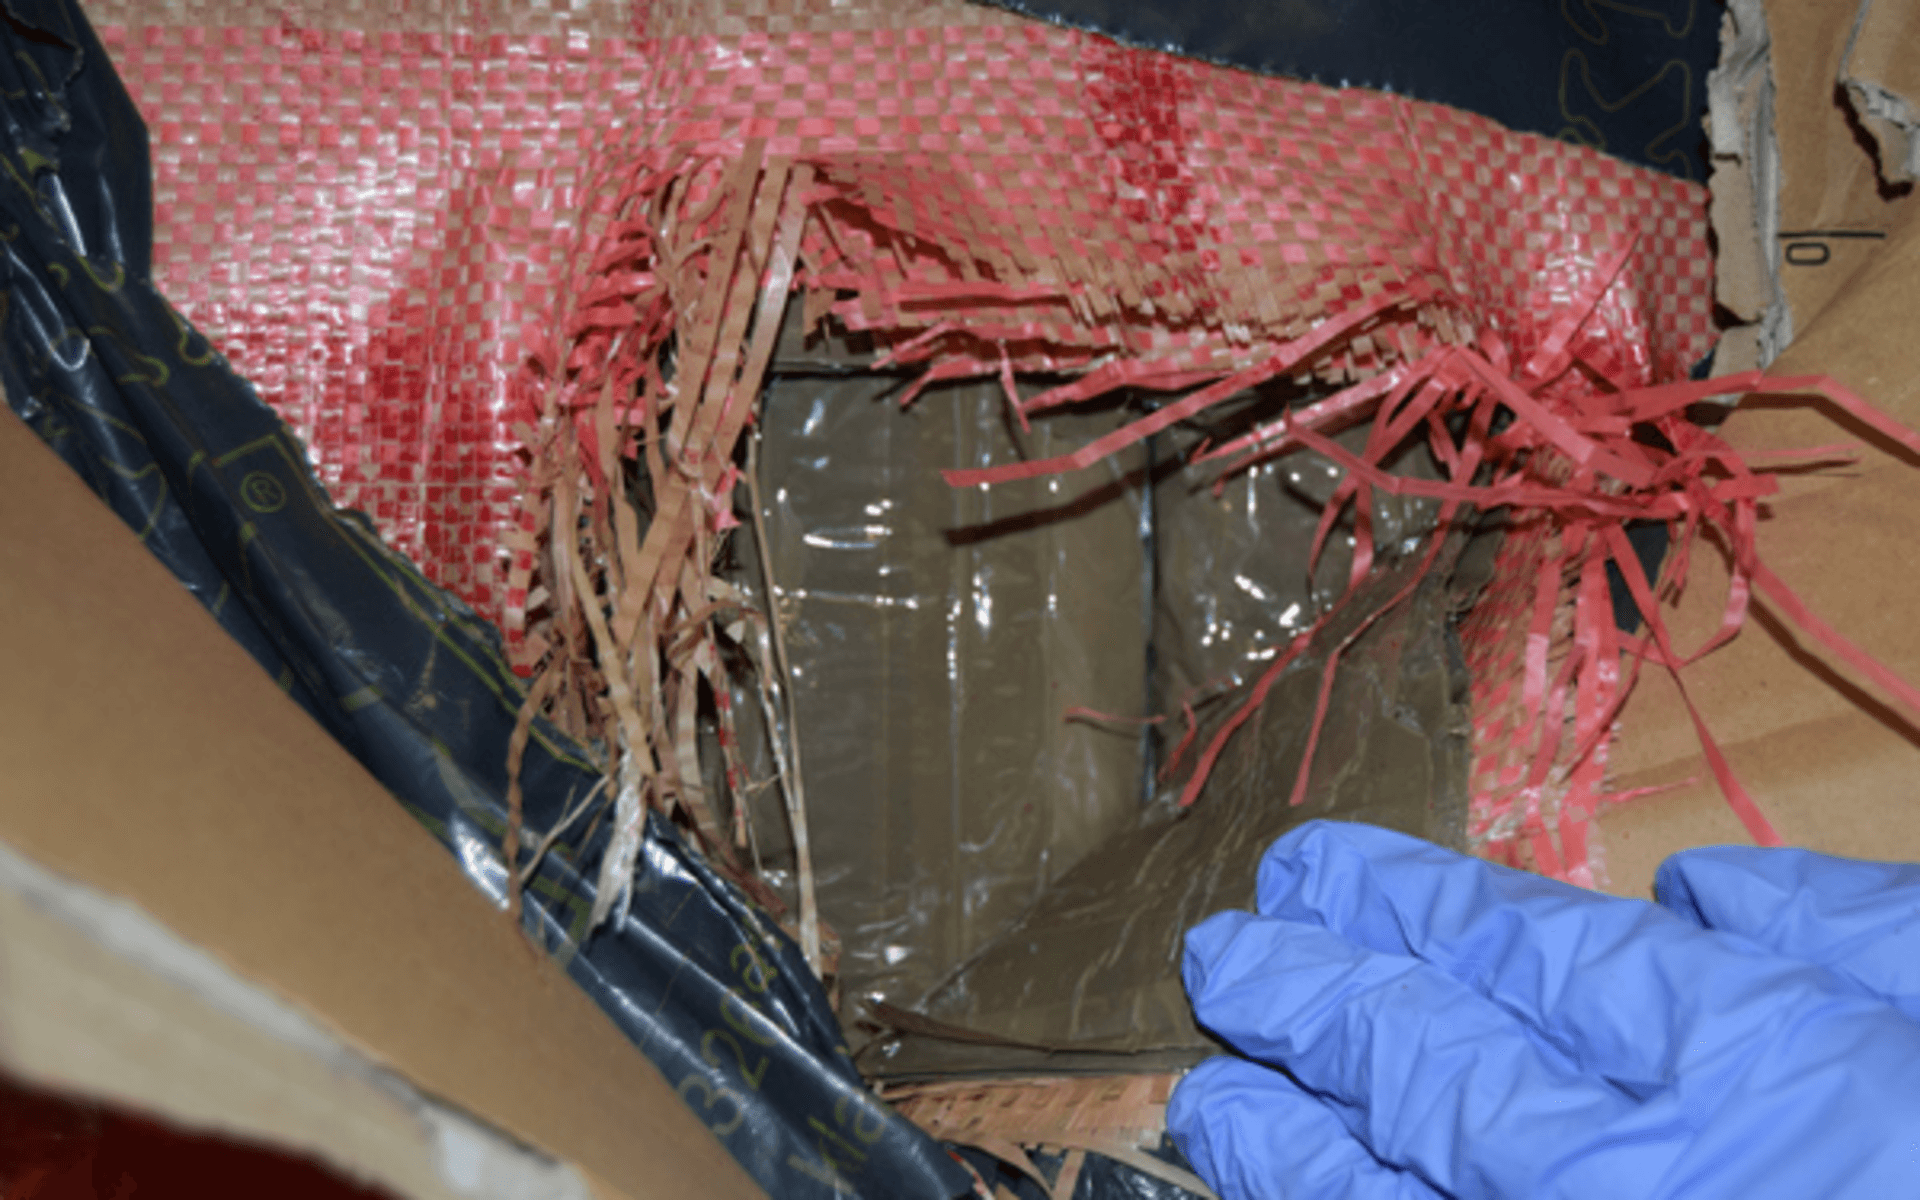 Mer än 400 kilo hasch hittades i lastbilen. Det fanns också amfetamin och marijuana. 